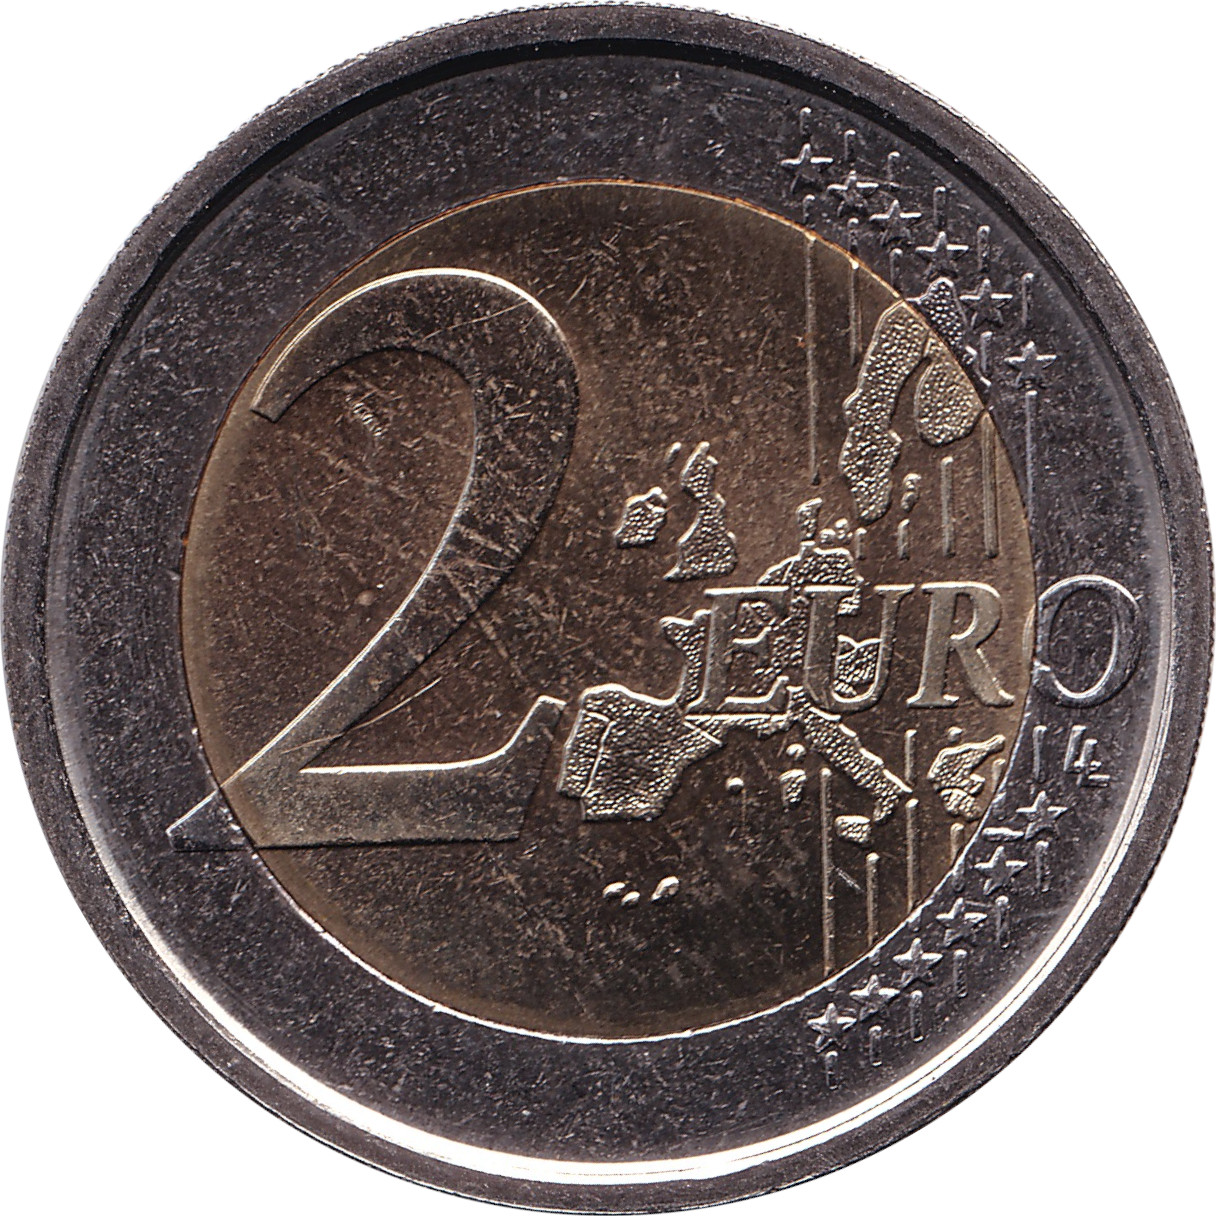 2 euro - Dante Alighieri